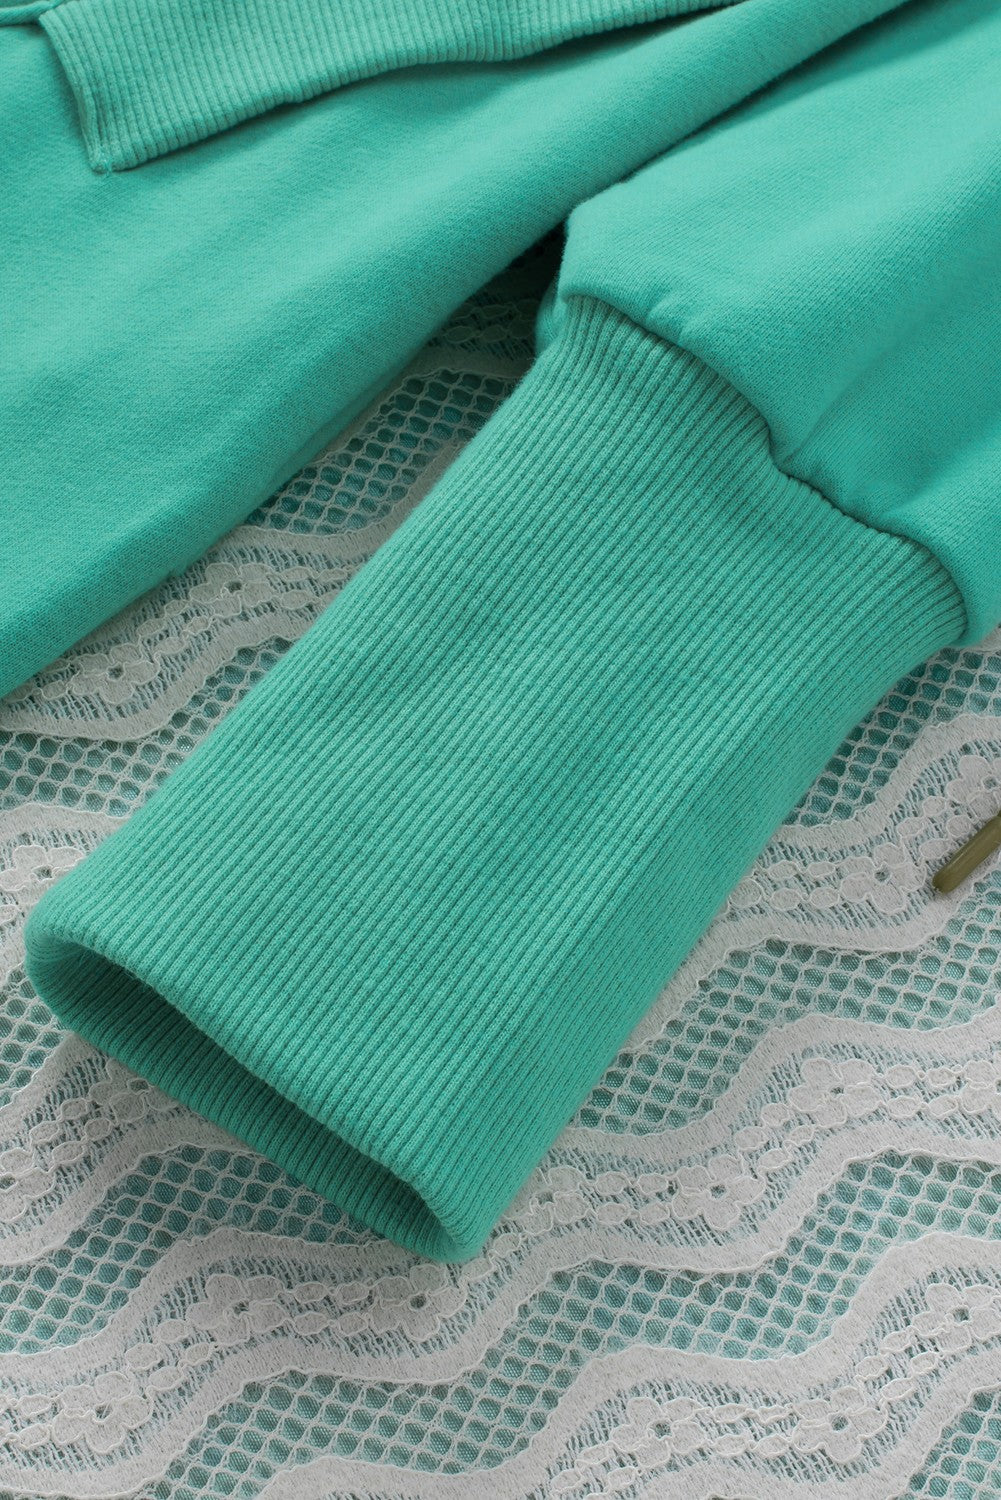 Sweat à capuche Henley turquoise avec poches et manches chauve-souris